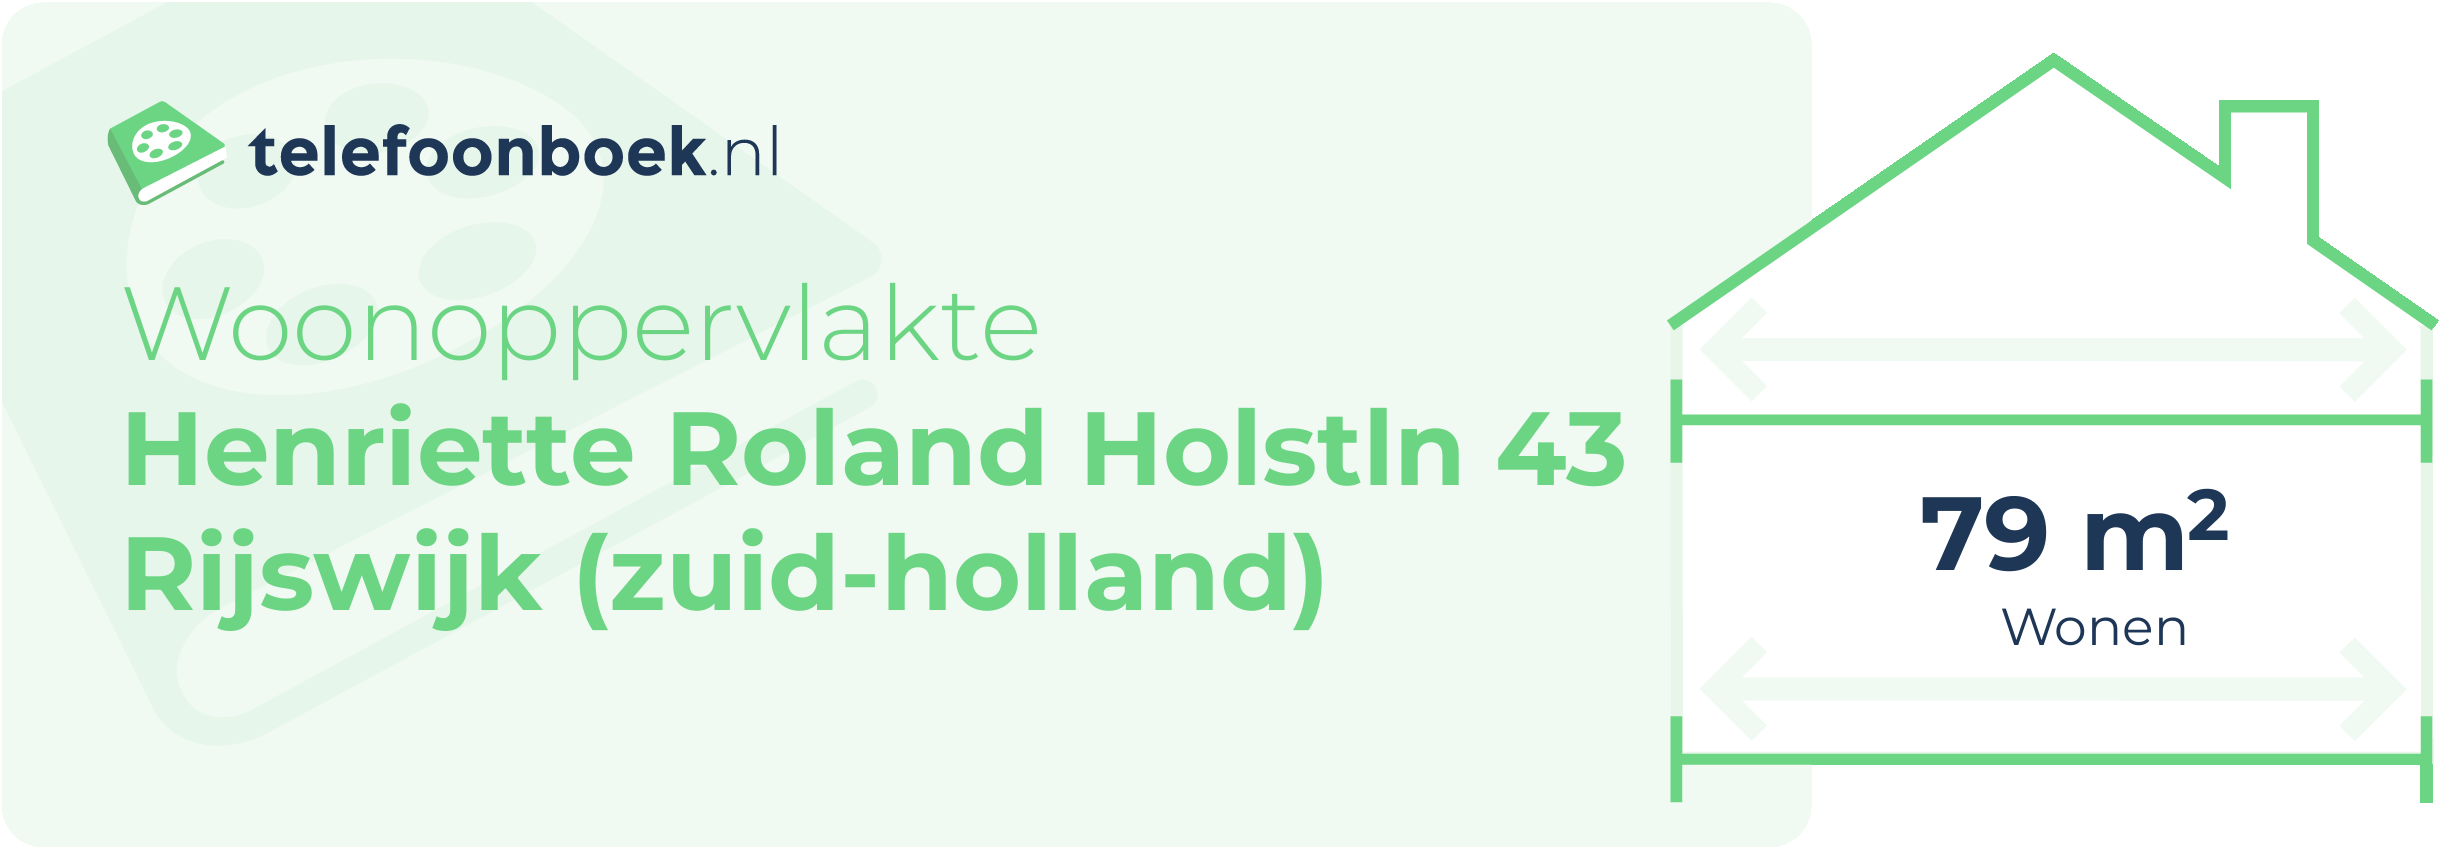 Woonoppervlakte Henriette Roland Holstln 43 Rijswijk (Zuid-Holland)